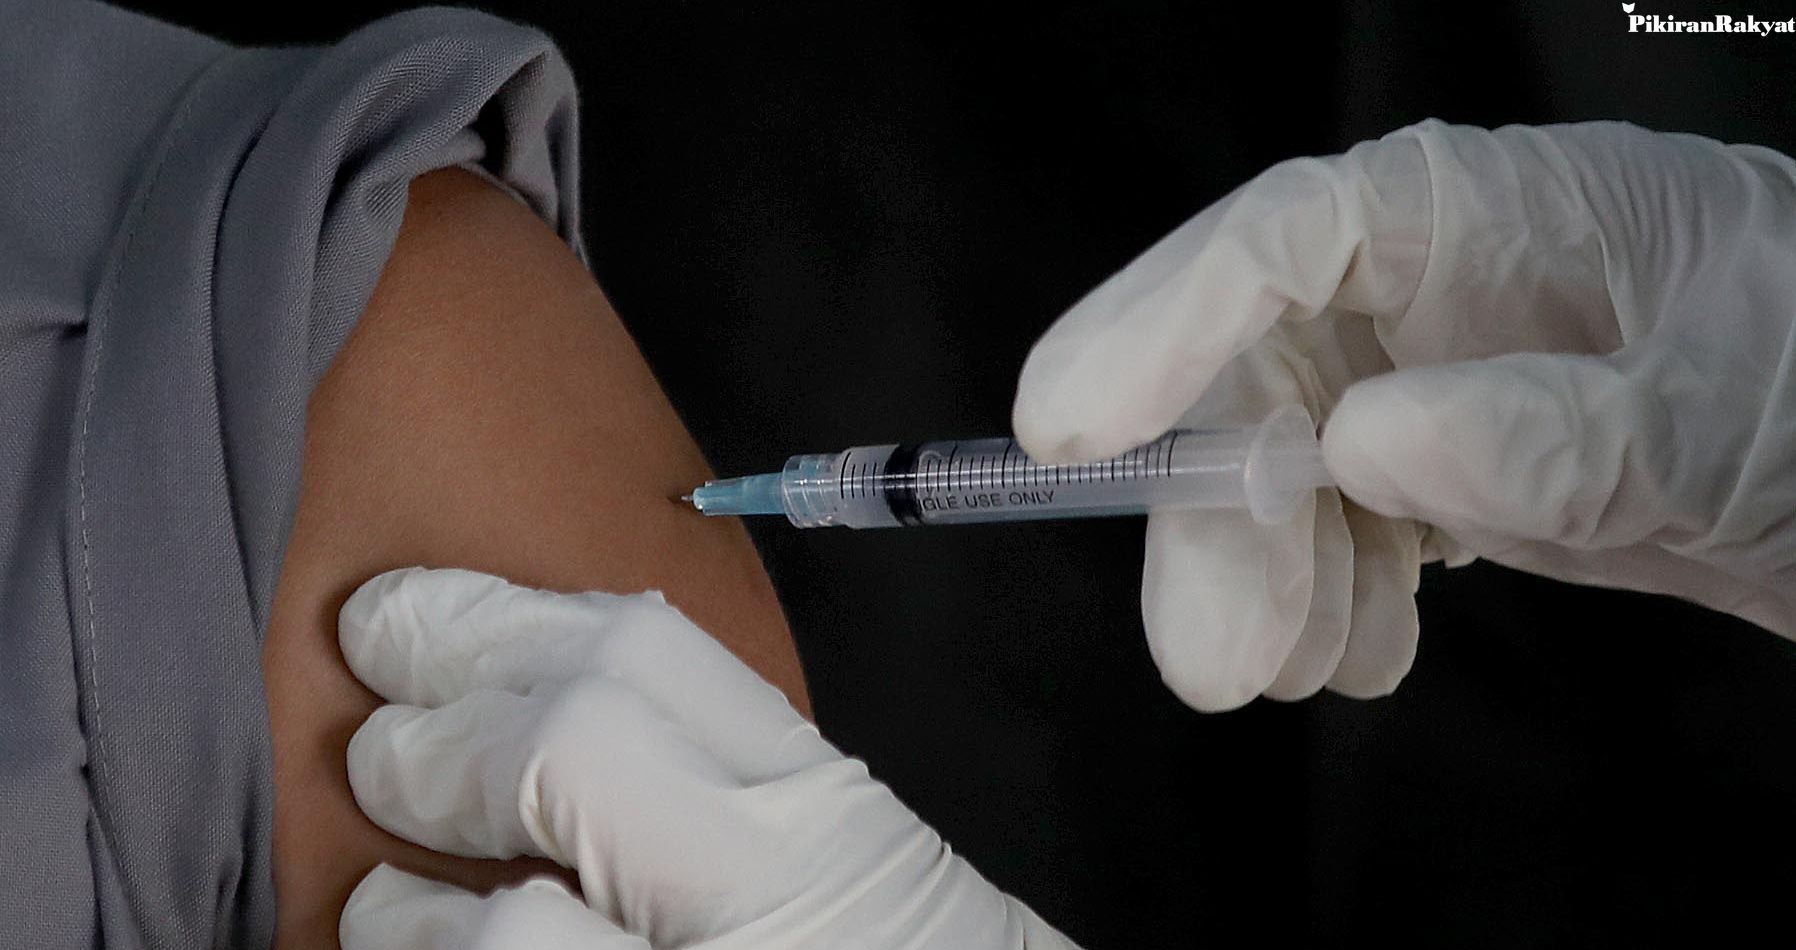 Program Vaksinasi Covid-19, Disparbud Kota Bekasi Ajukan 1.479 Orang untuk Vaksinasi